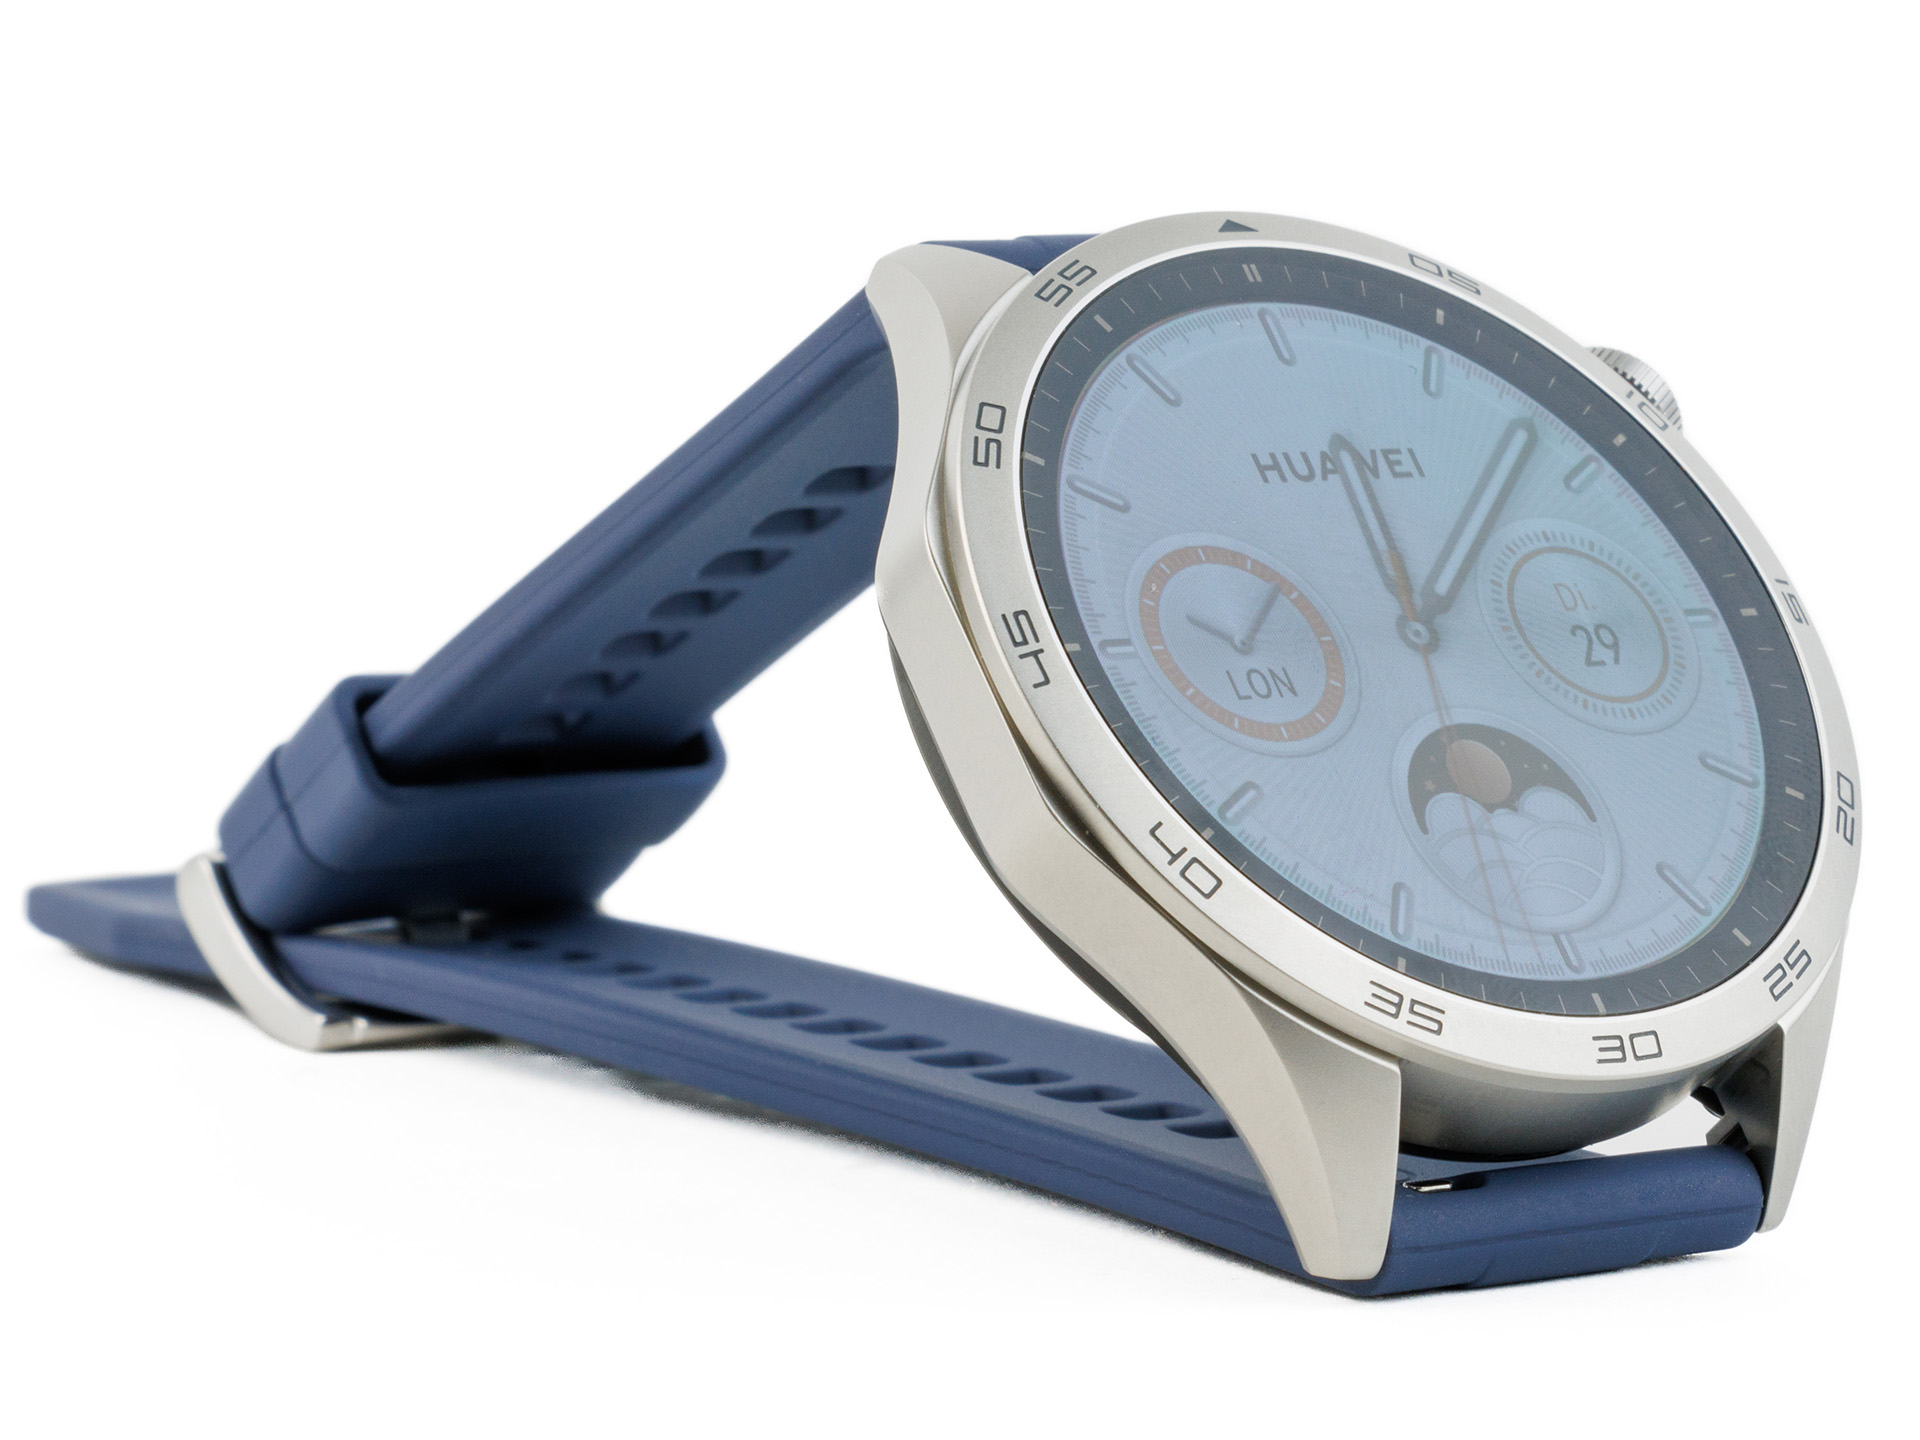 Smartwatch Huawei Watch Gt4 (gps) 41mm Negro Mate